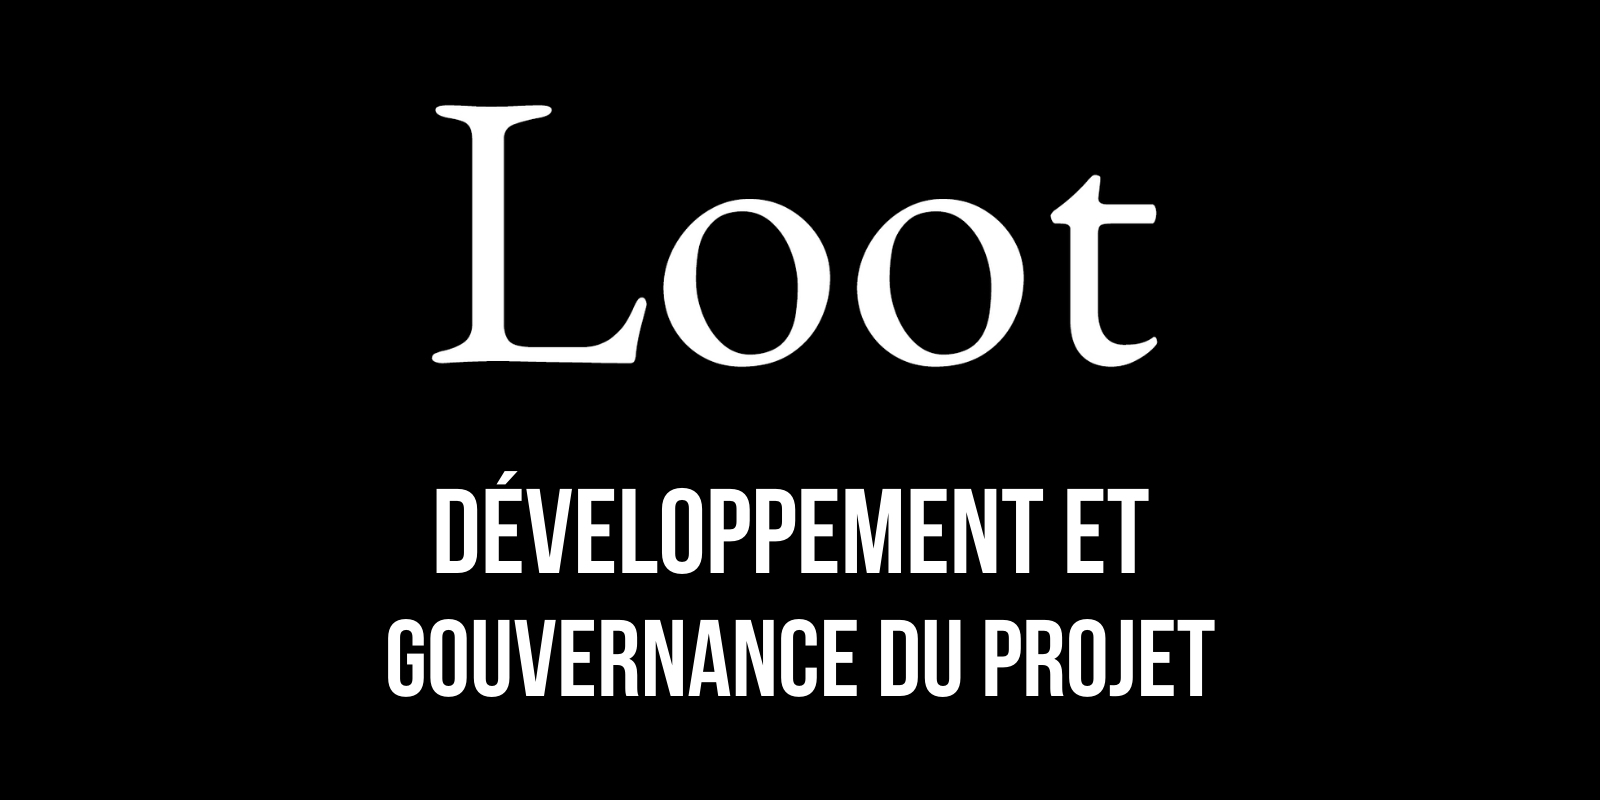 Loot (for Adventurers) – Développement et gouvernance du projet de NFTs